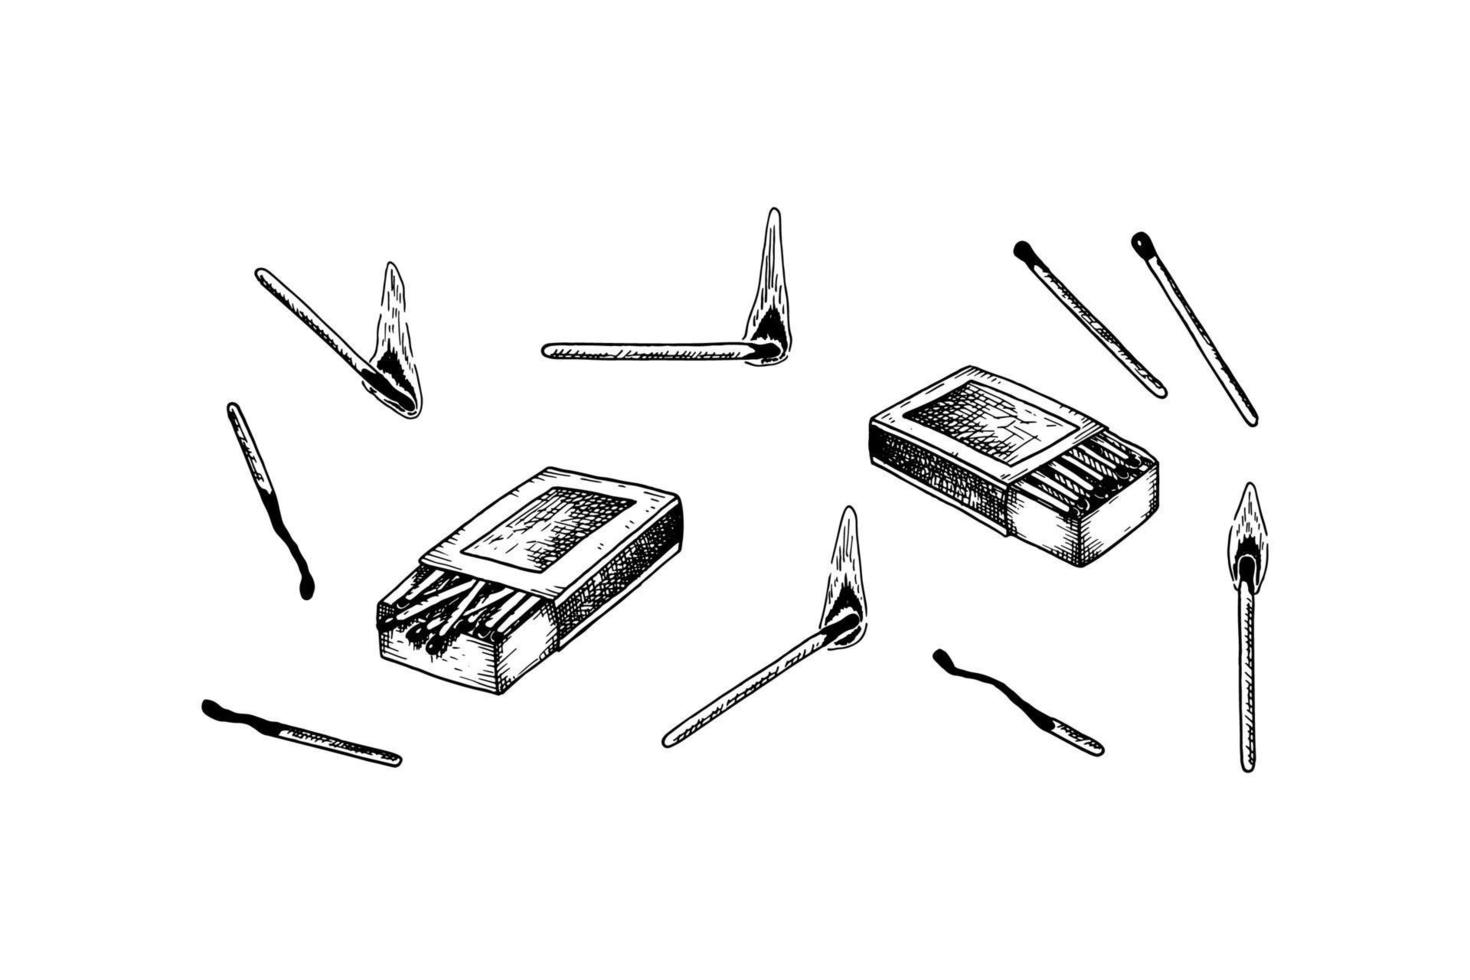 juego de fósforos dibujados a mano aislado sobre fondo blanco. ilustración vectorial en estilo boceto vector